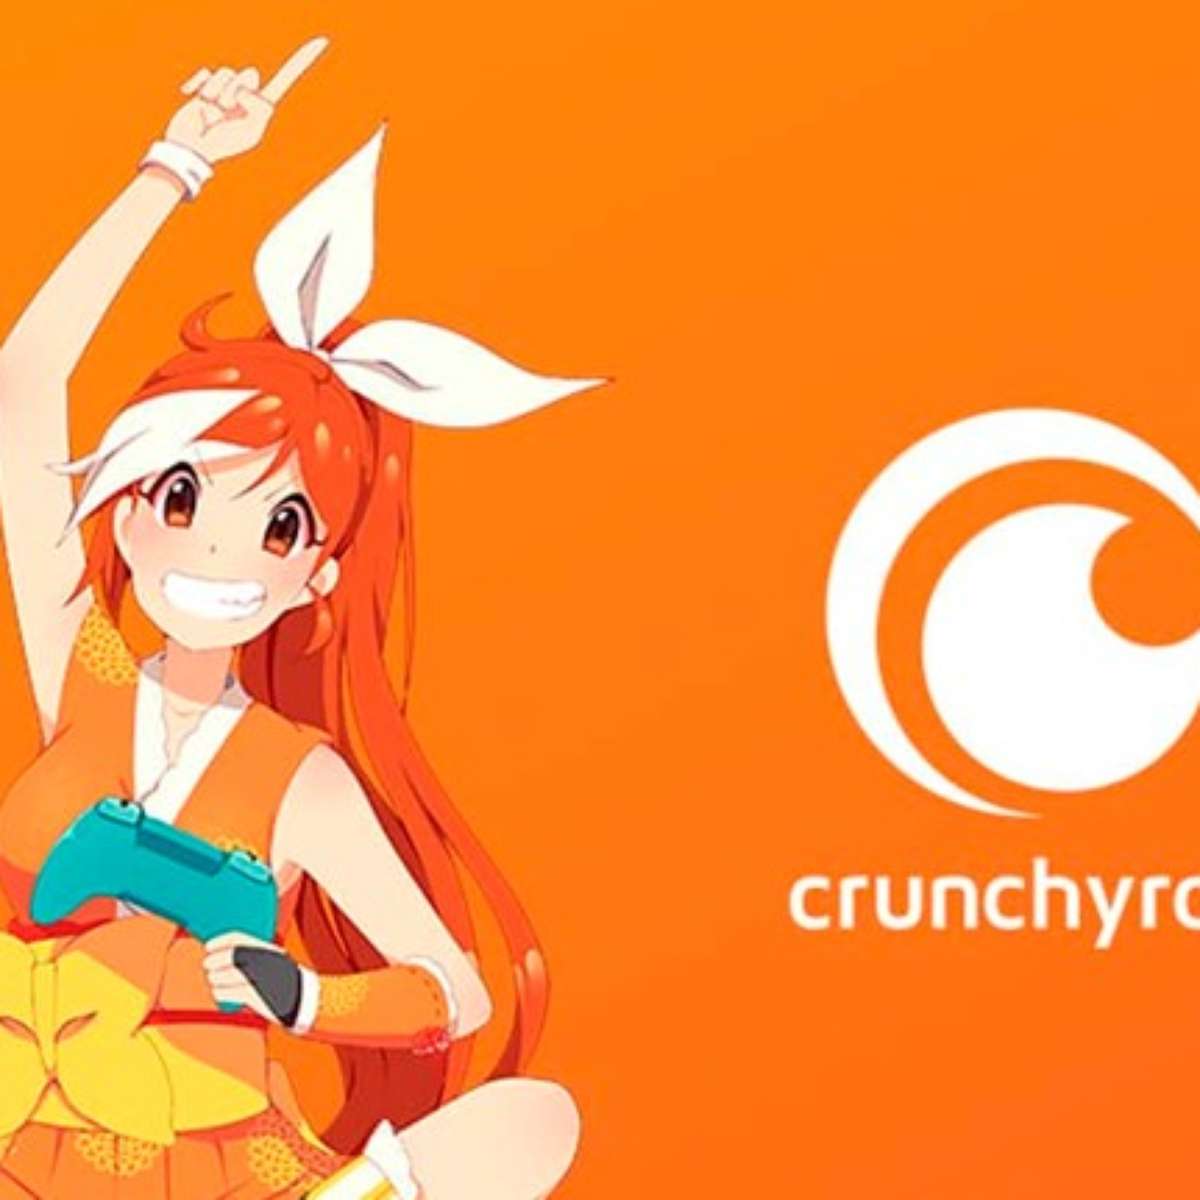 Crunchyroll.pt - A confiança de milhões